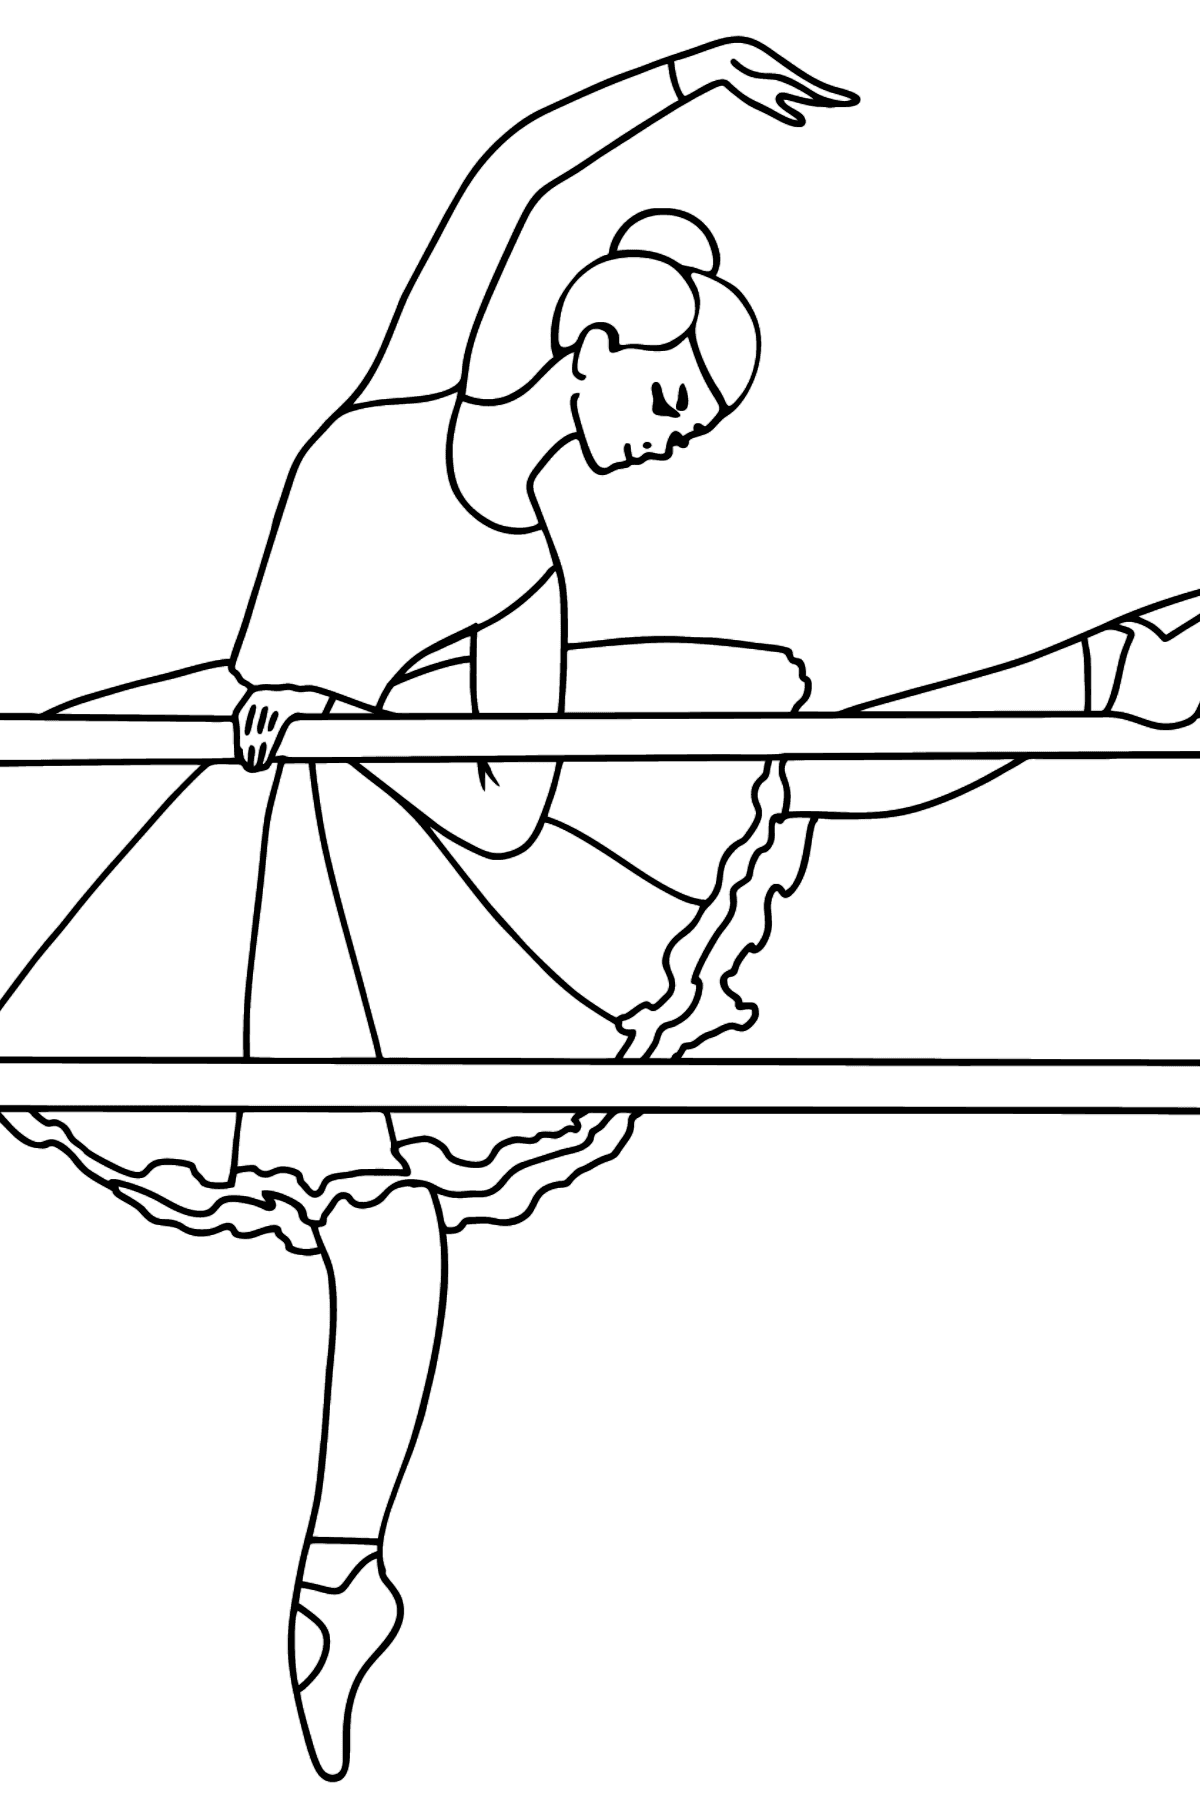 Ausmalbild - Ballerina in der Scheune - Malvorlagen für Kinder